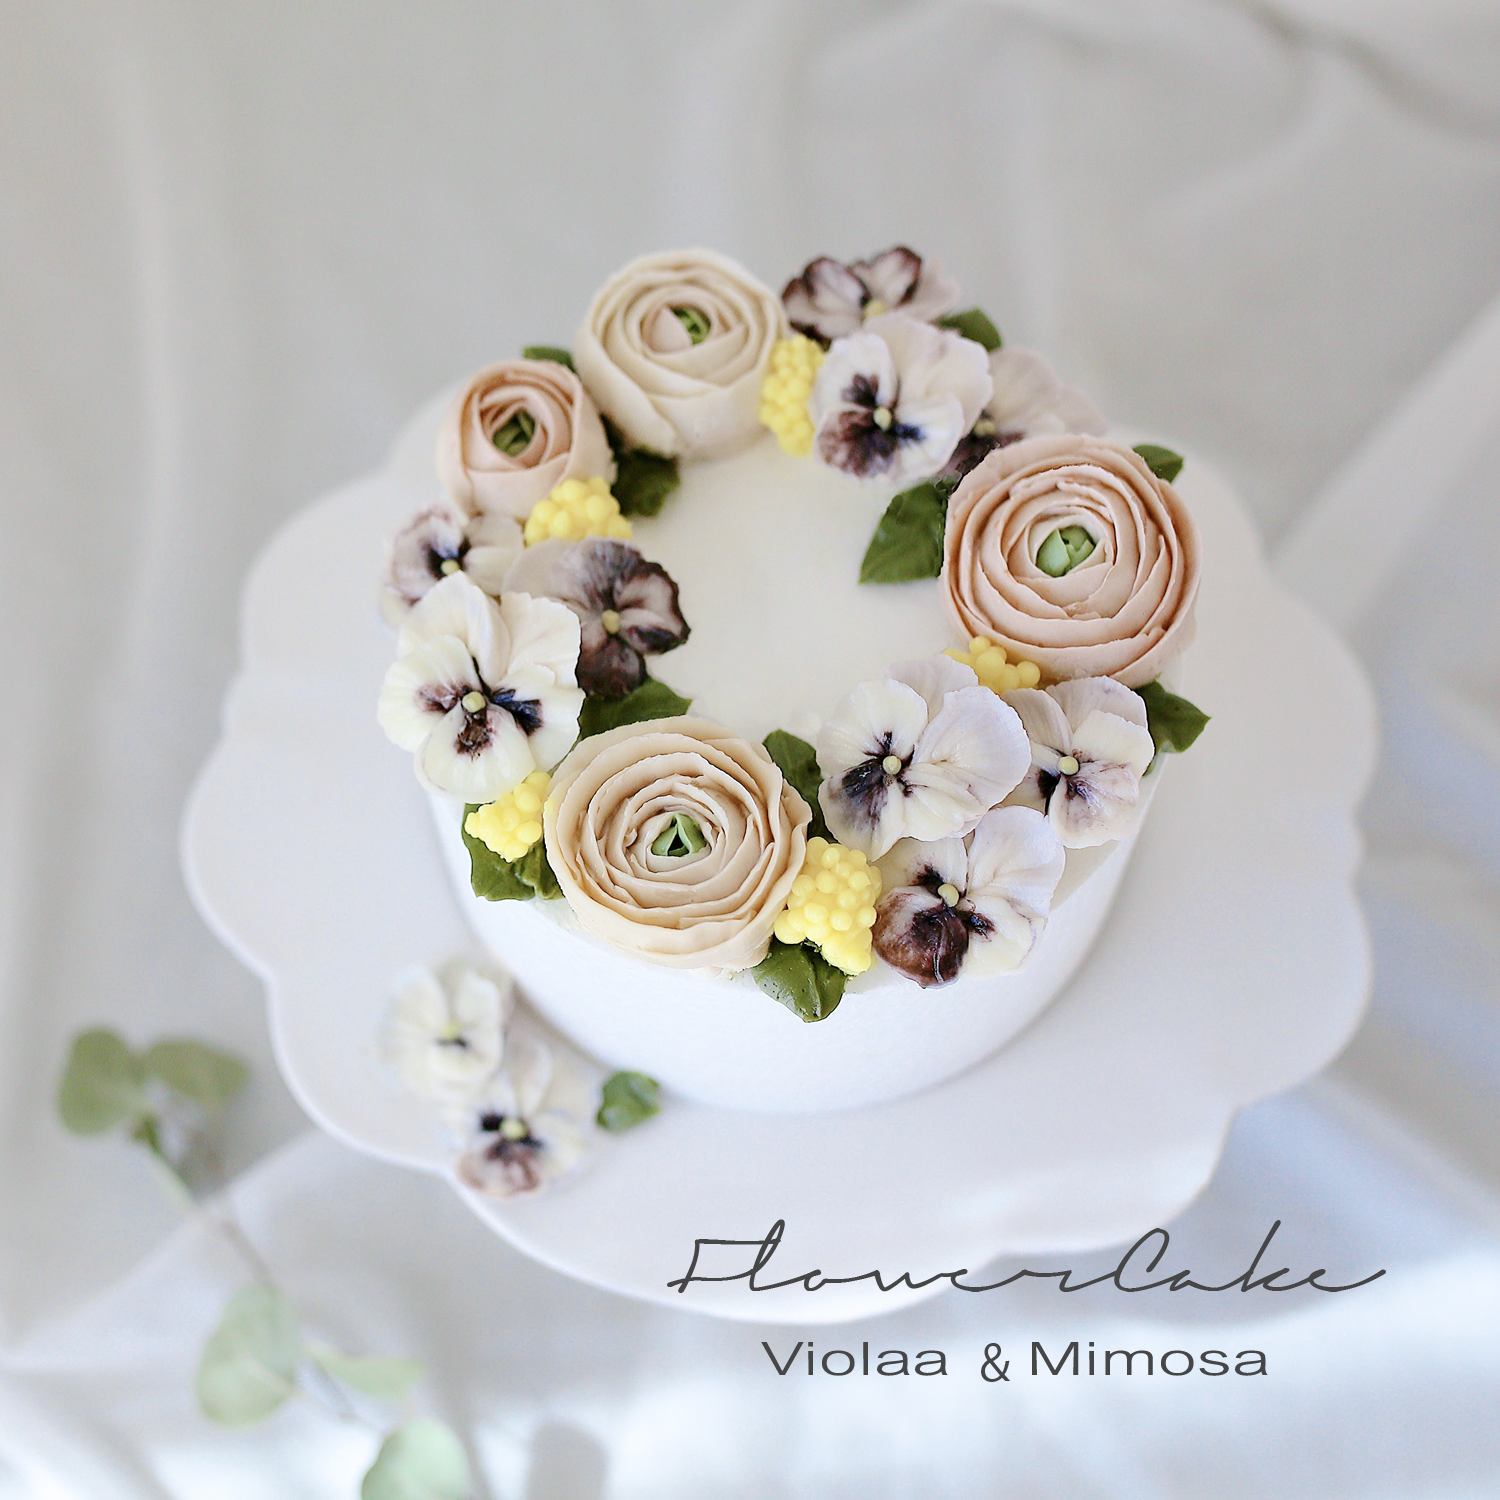 Flowercake　viola